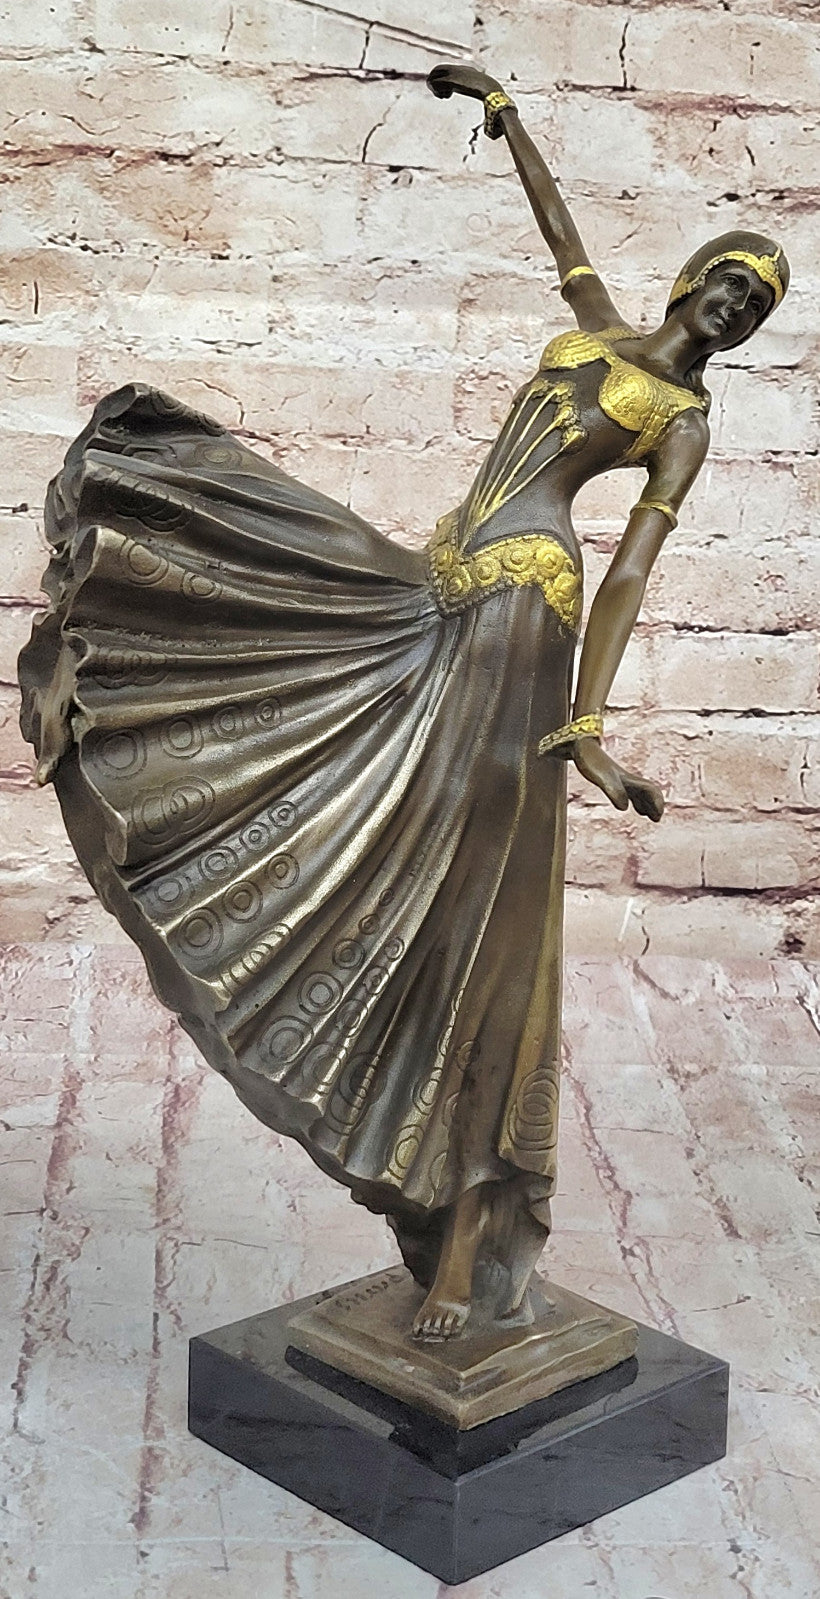 Solid Bronze Chiparus Dancer Sculpture: Fine Art Deco Home Decor Piece Figure